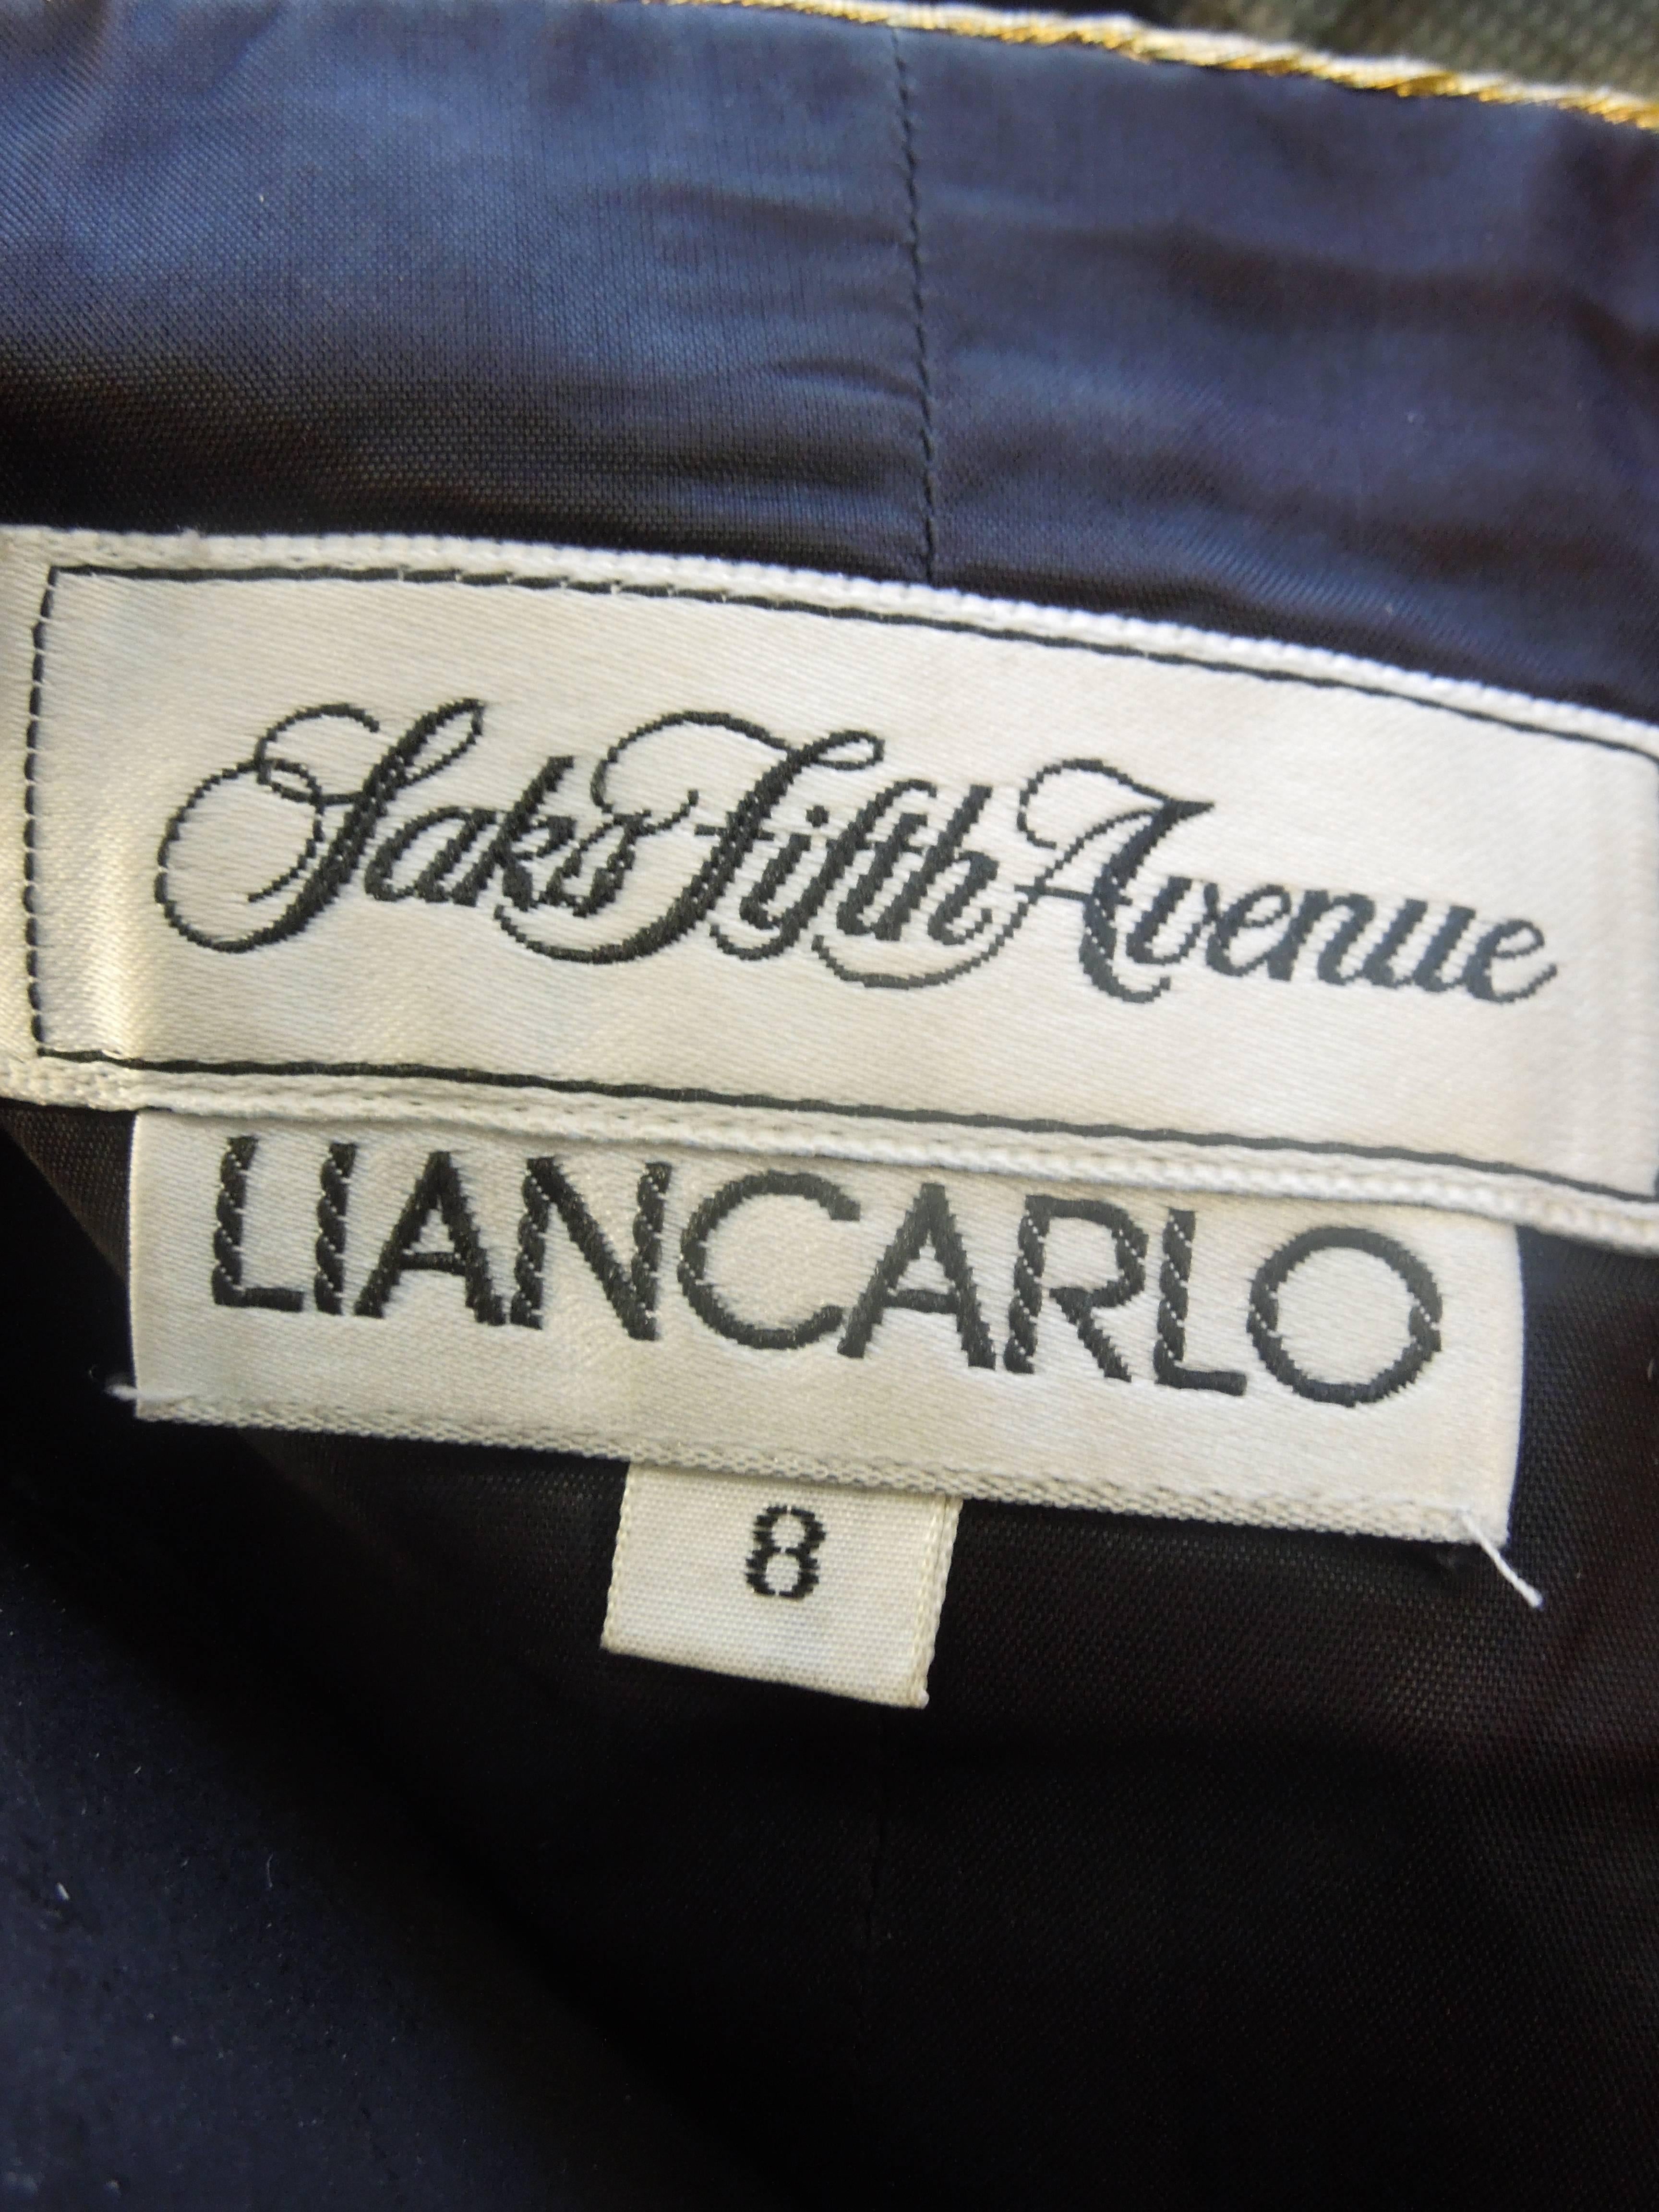 Modern Liancarlo Gold and Black Chiffon Strapless Jumpsuit and Matching Jacket